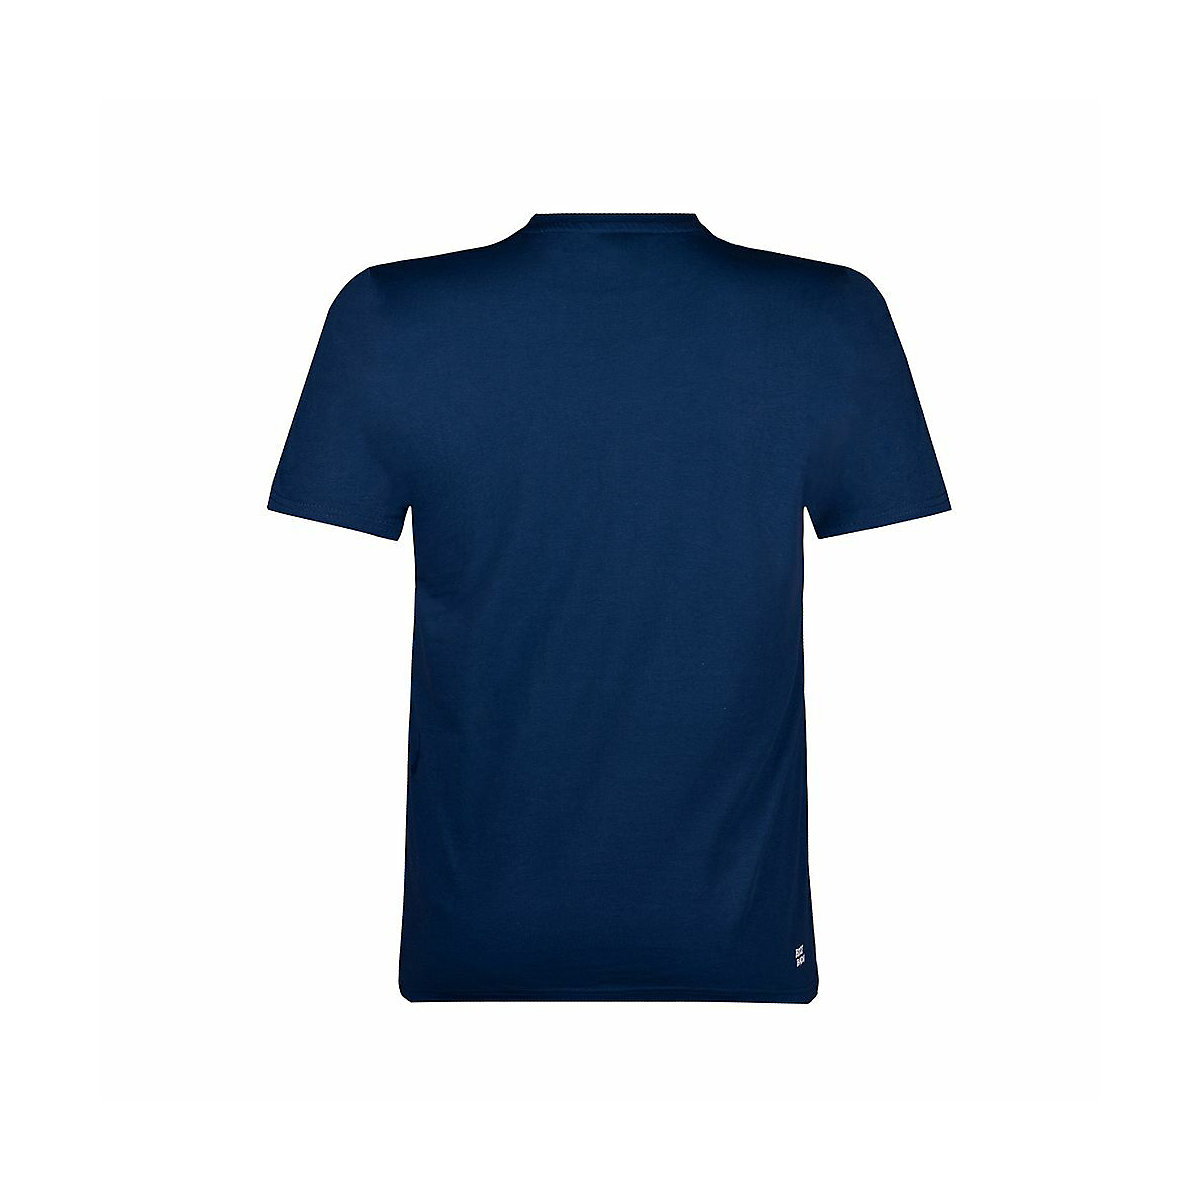 BIDI BADU® Laron Lifestyle Tee T-Shirts für Jungen dunkelblau